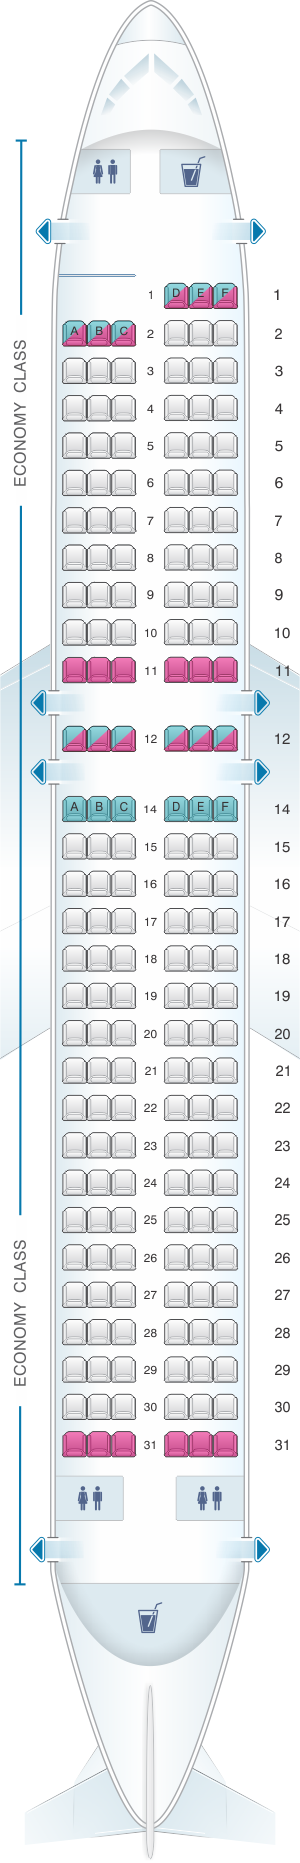 Seat Map Allegiant Air Airbus A320 | SeatMaestro